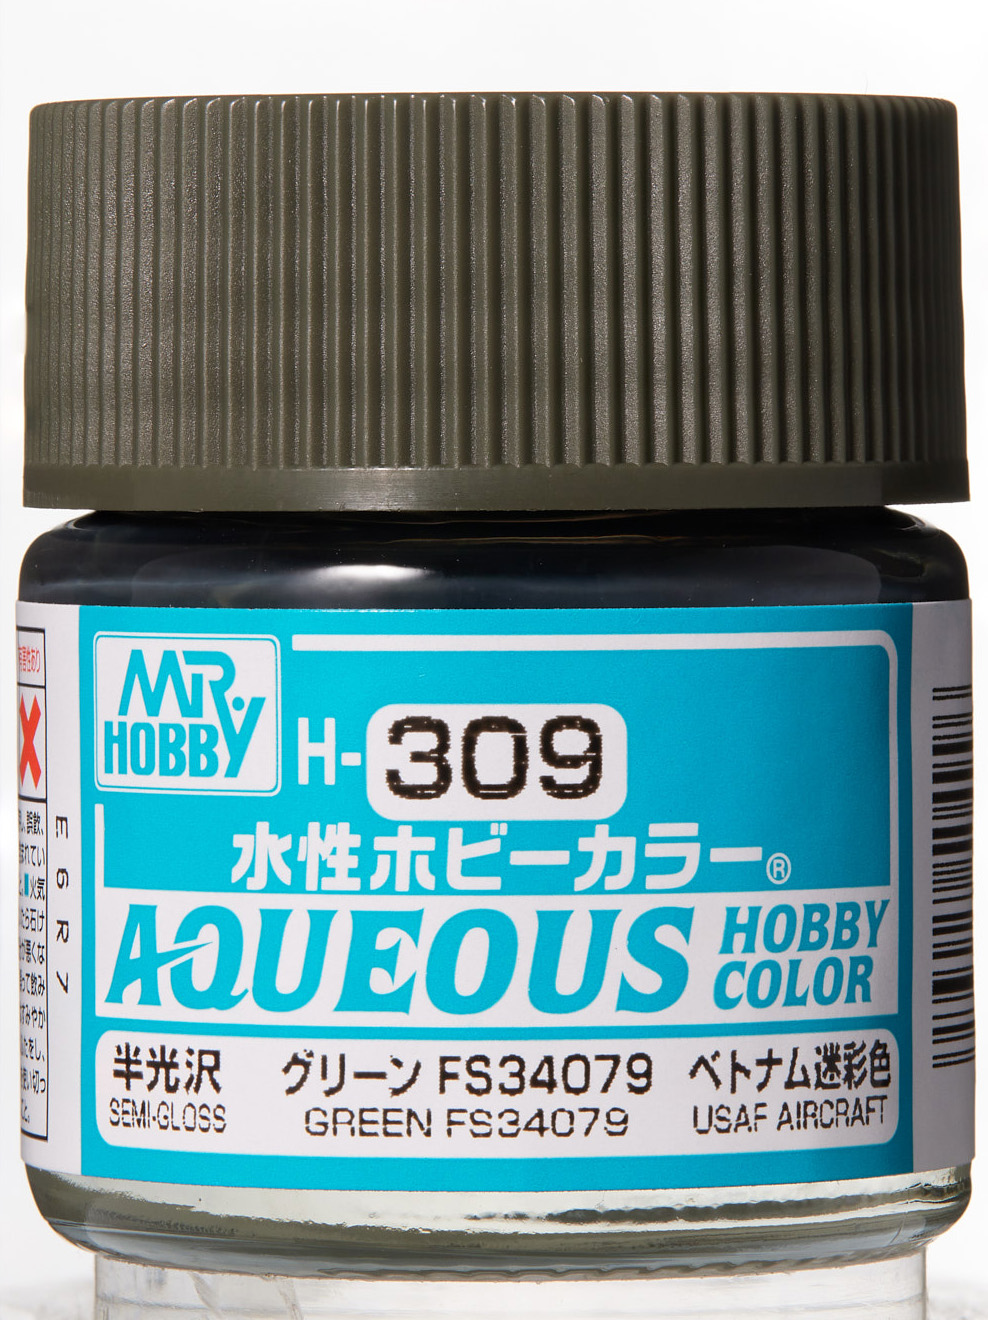 Mr. Aqueous Hobby Color - Geen FS34079 - H309 - Grün FS34079 